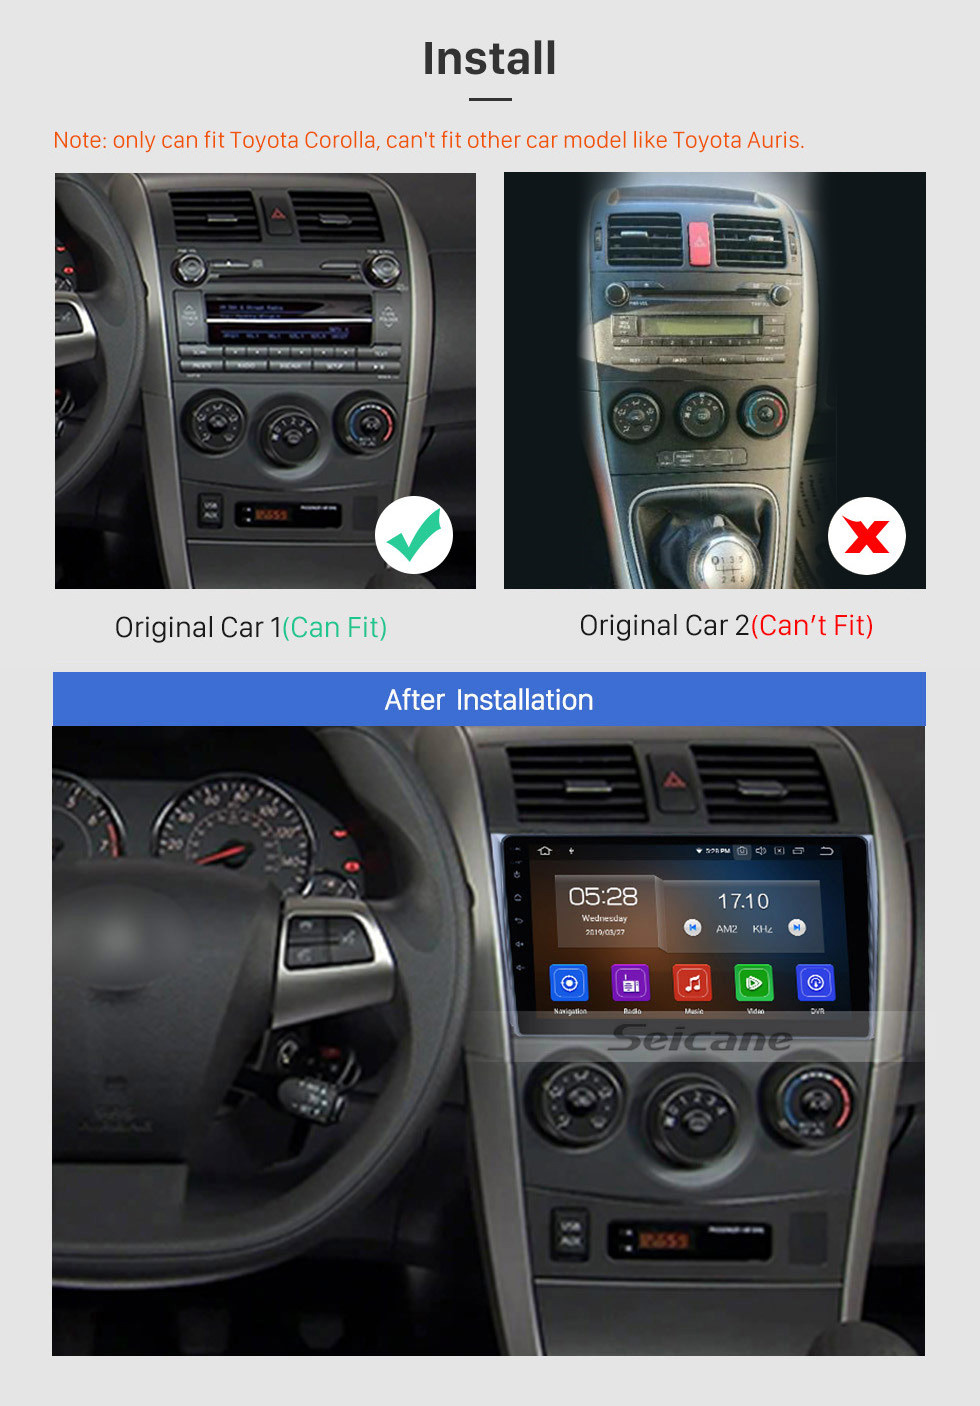 Seicane Système de navigation GPS 9 pouces Android 12.0 pour Toyota COROLLA 2006-2011 avec Bluetooth Radio HD 1024*600 écran tactile OBD2 DVR TV 1080P Vidéo 3G WIFI Commande au volant Caméra de recul USB SD Quad-core CPU Lien miroir